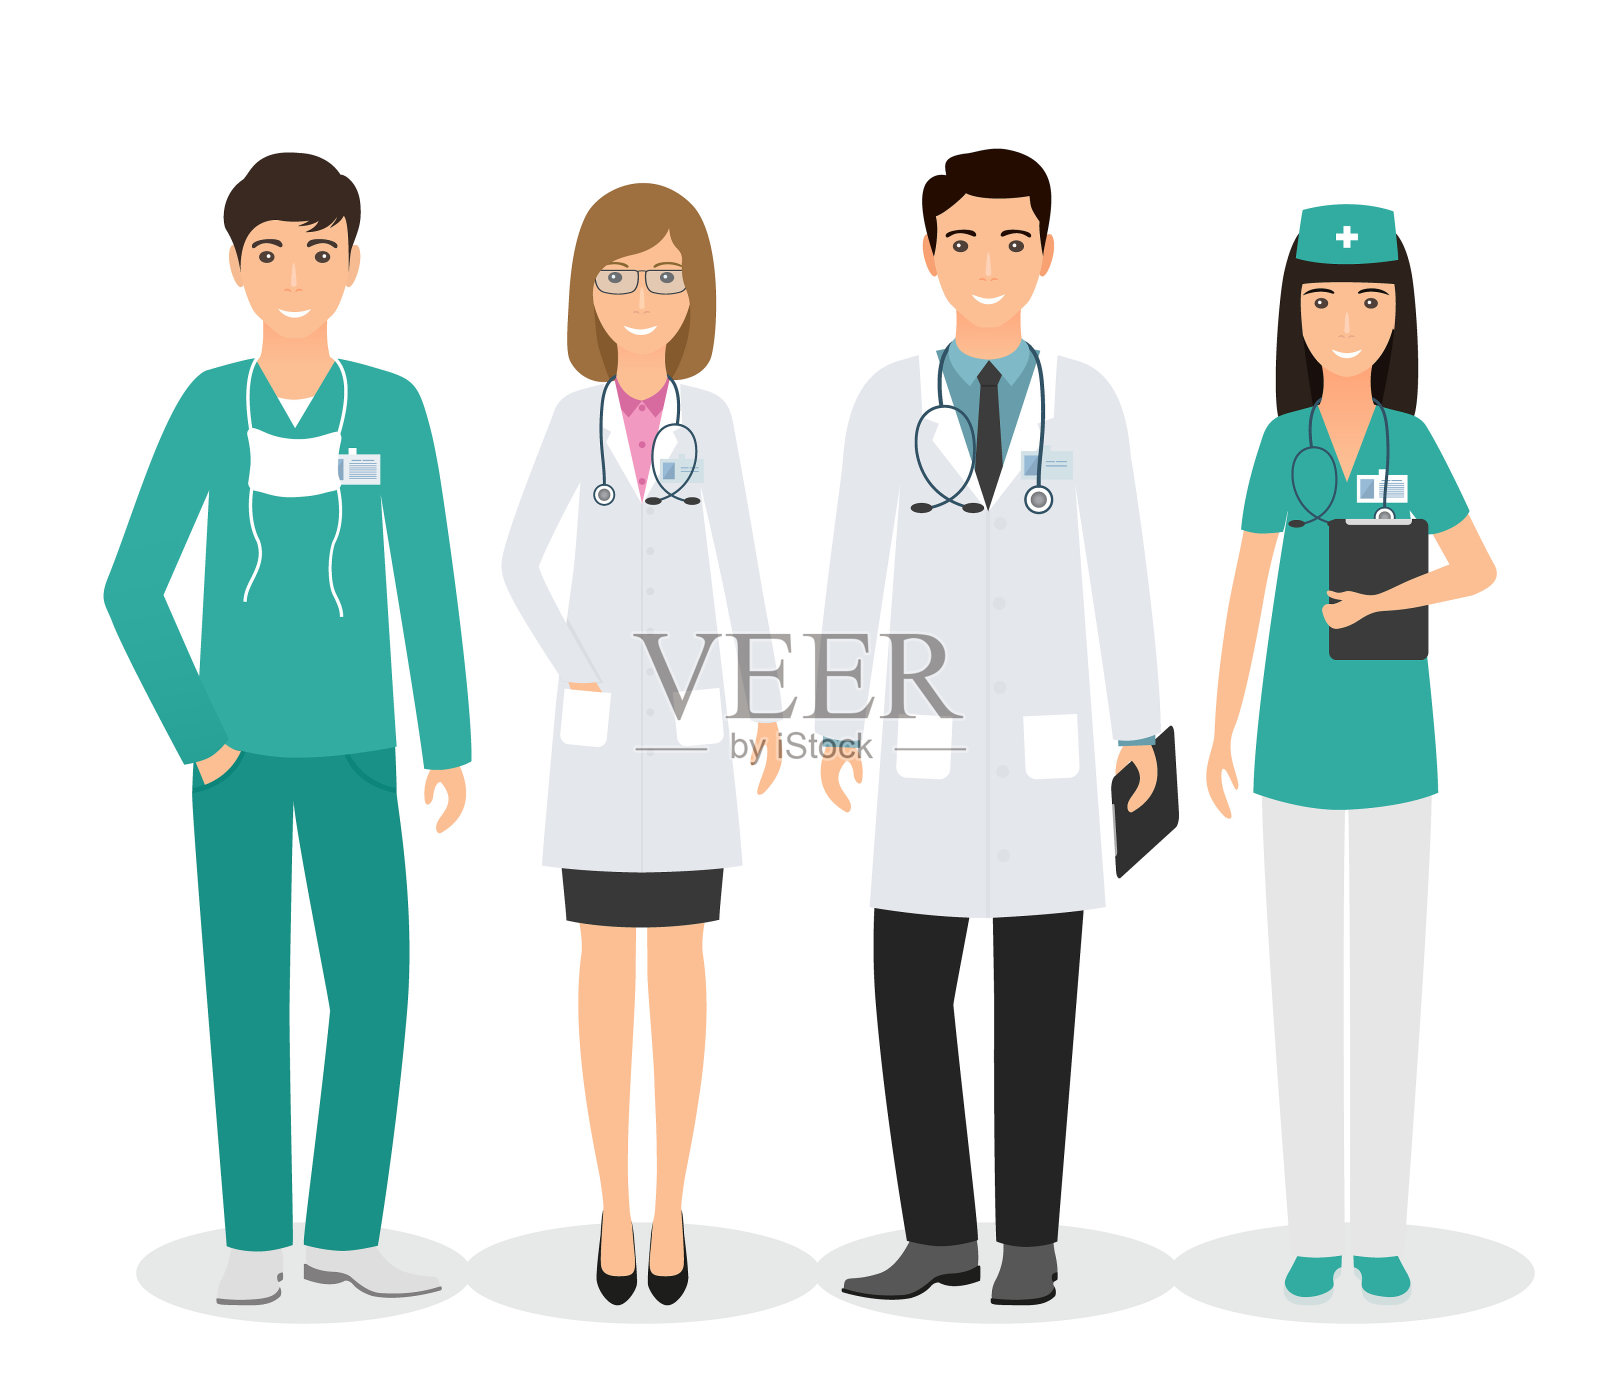 四名医务人员以不同姿势站在一起。医生和护士的背景是白色的。插画图片素材